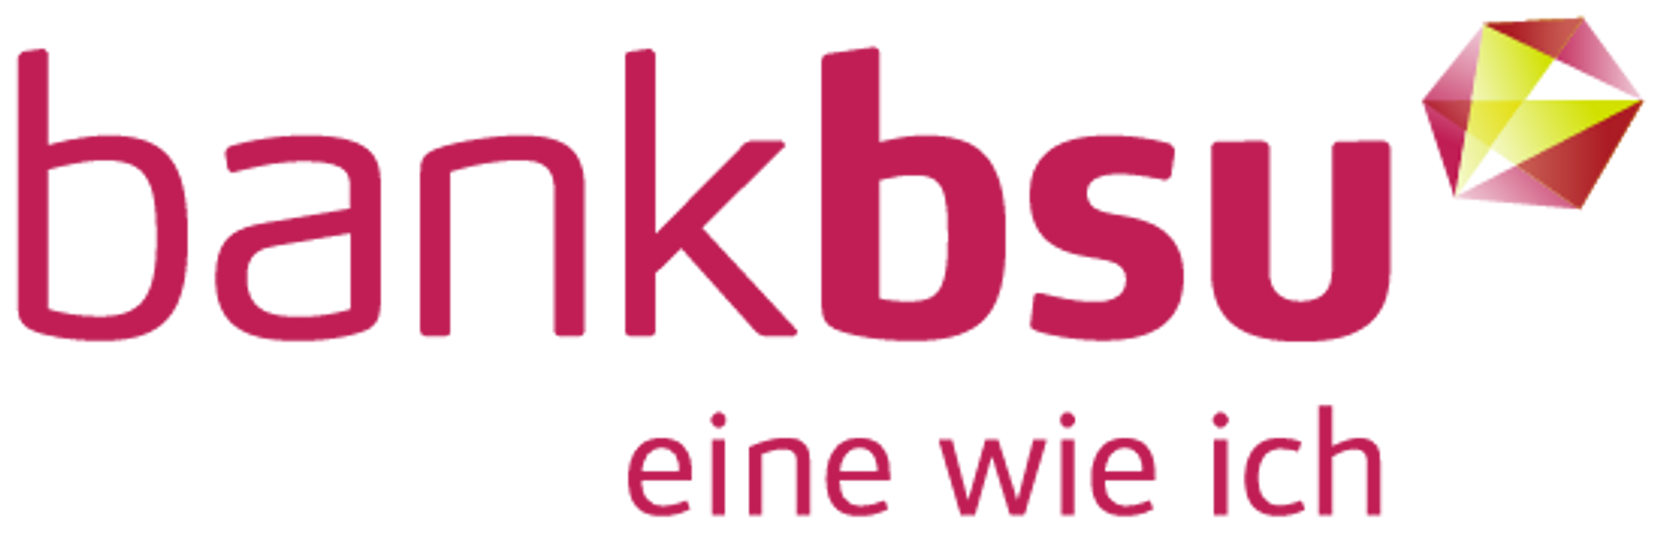 Logo der Bank bsu.